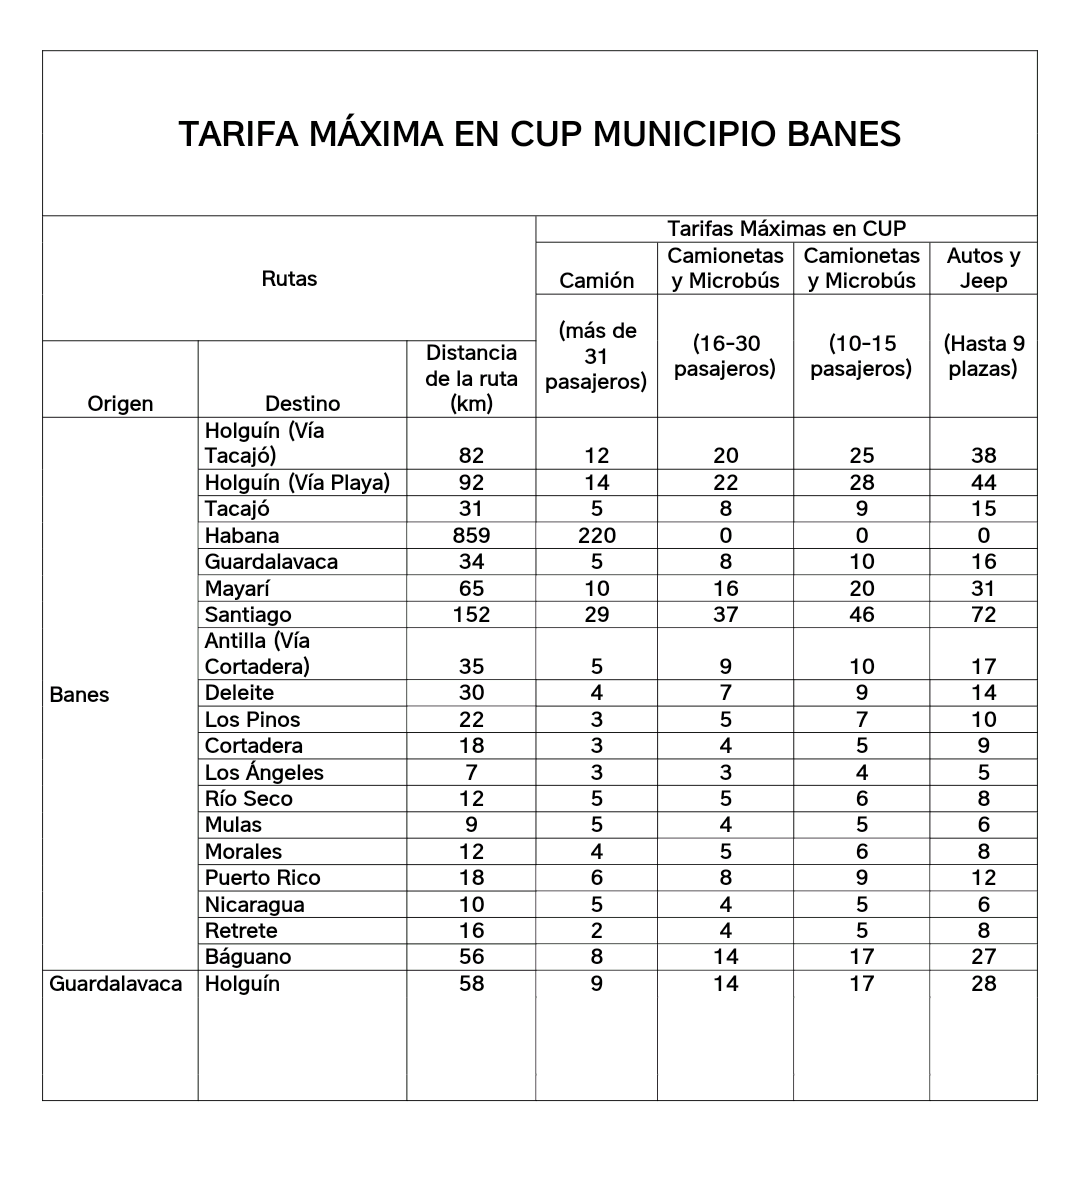 Tarifas máximas en CUP para los titulares del sector no estatal